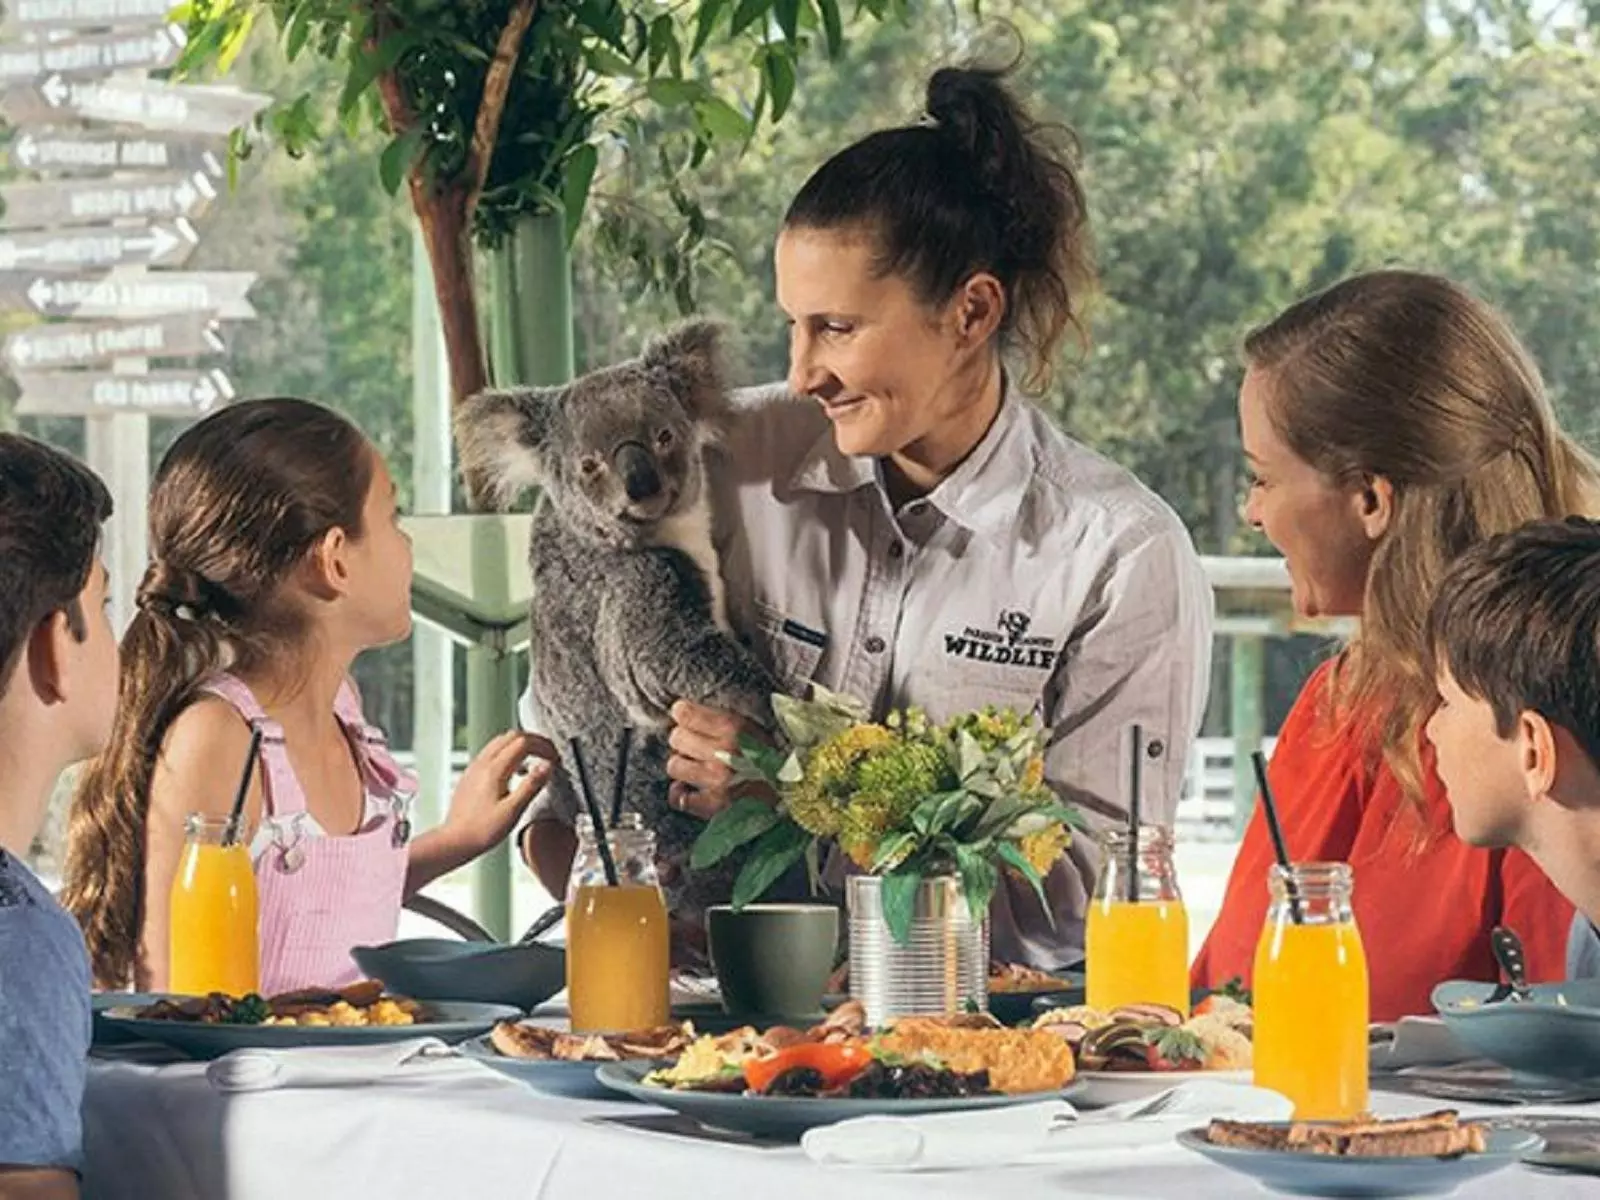 Enjoy Breakfast with the Koalas from $50